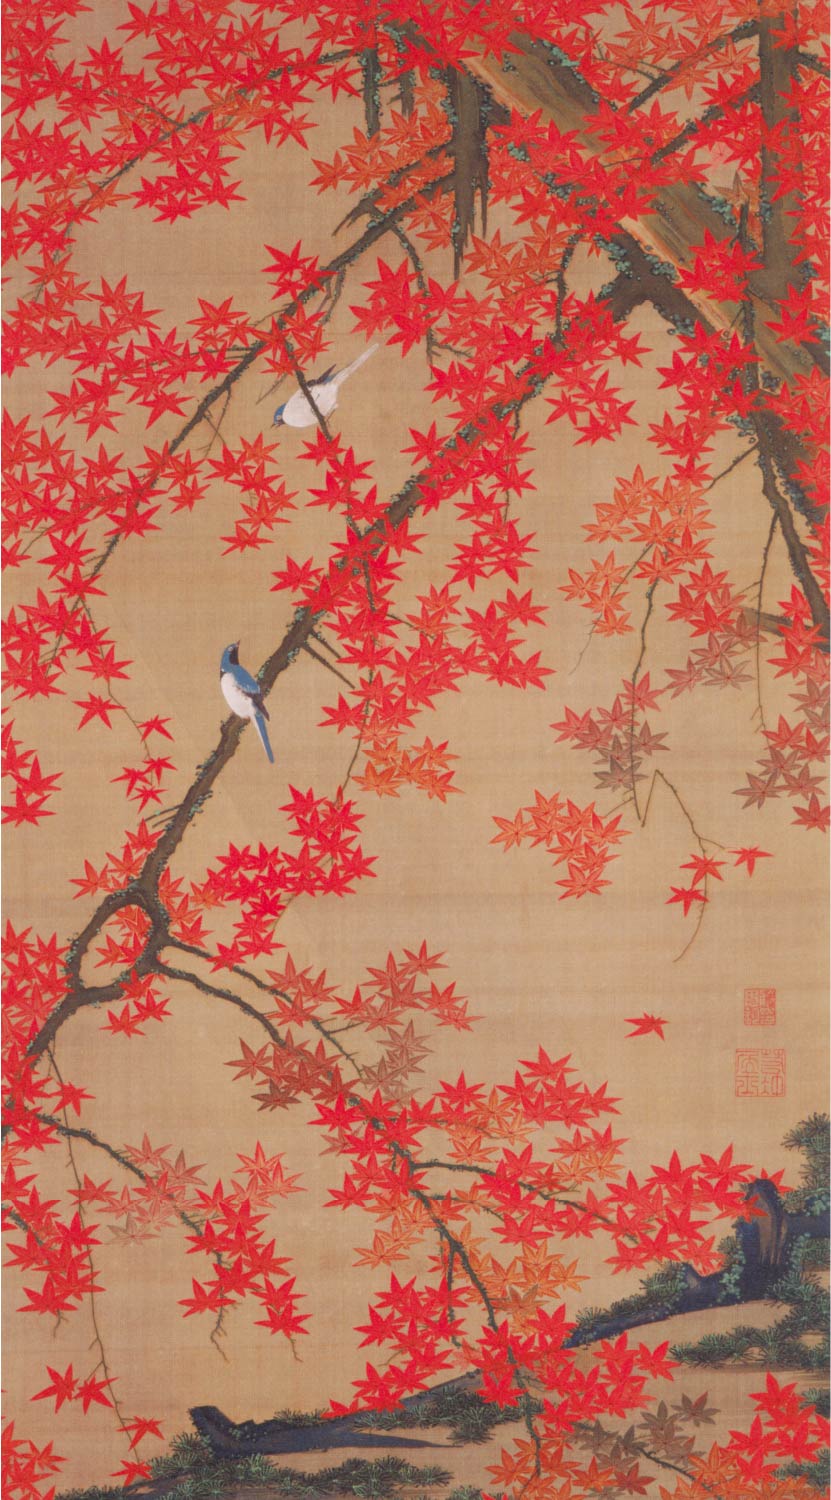 【無料壁紙】伊藤 若冲「紅葉小禽図 (1766頃)」 / Ito Jakuchu_Koyo Shokin-zu (Birds and autumn maples) (ca.1766)